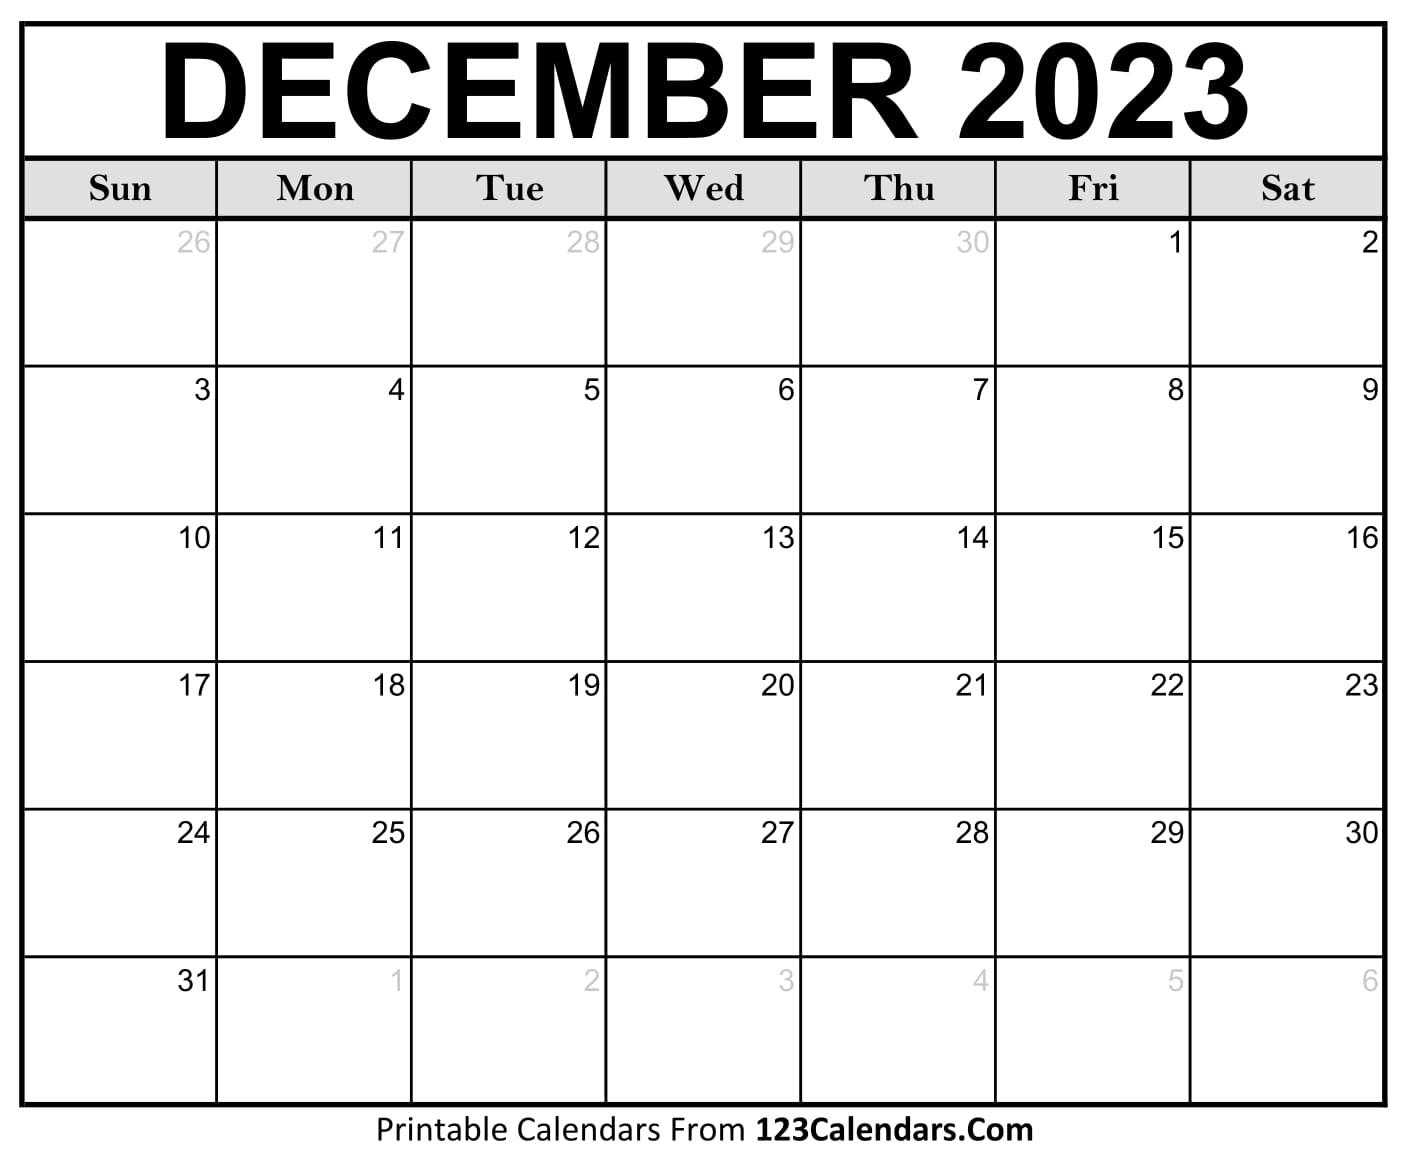 Printable December 2023 Calendar Templates 123Calendars com